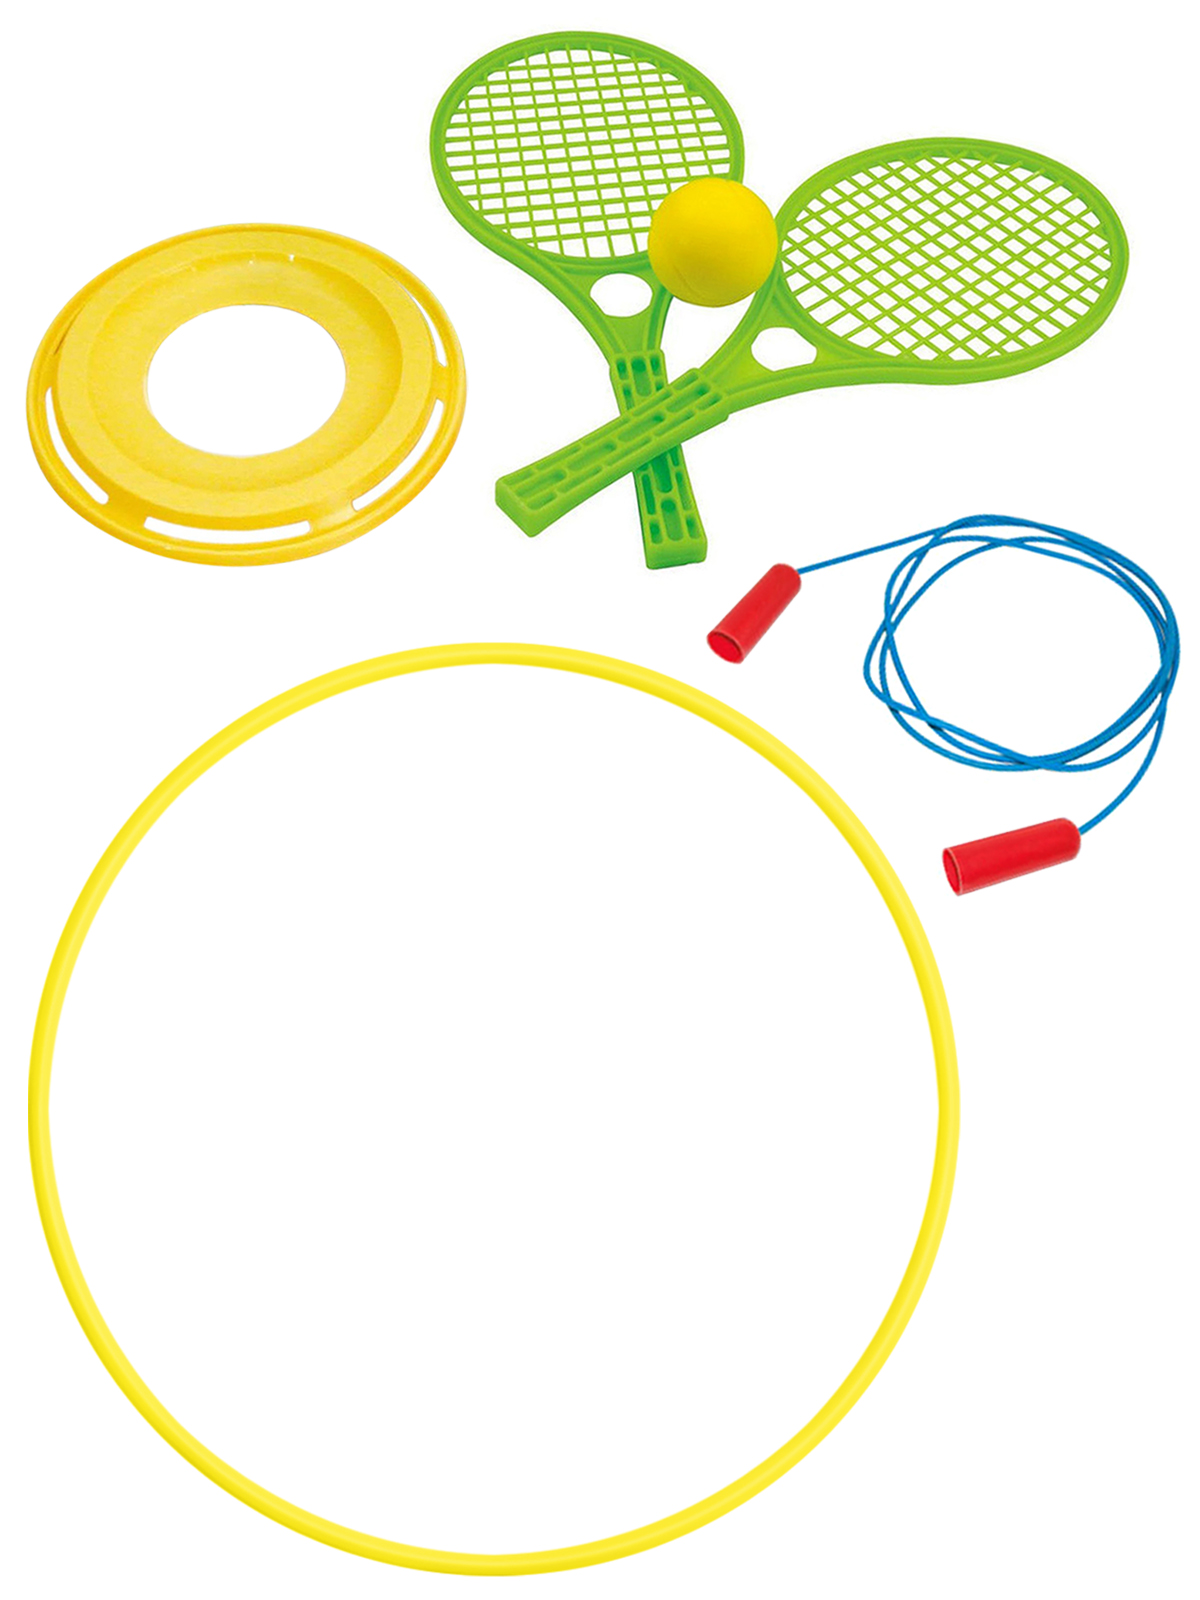 фото Уличные игры zebratoys летающий диск+набор для тенниса+скакалка спорт.+обруч 80 см желтый